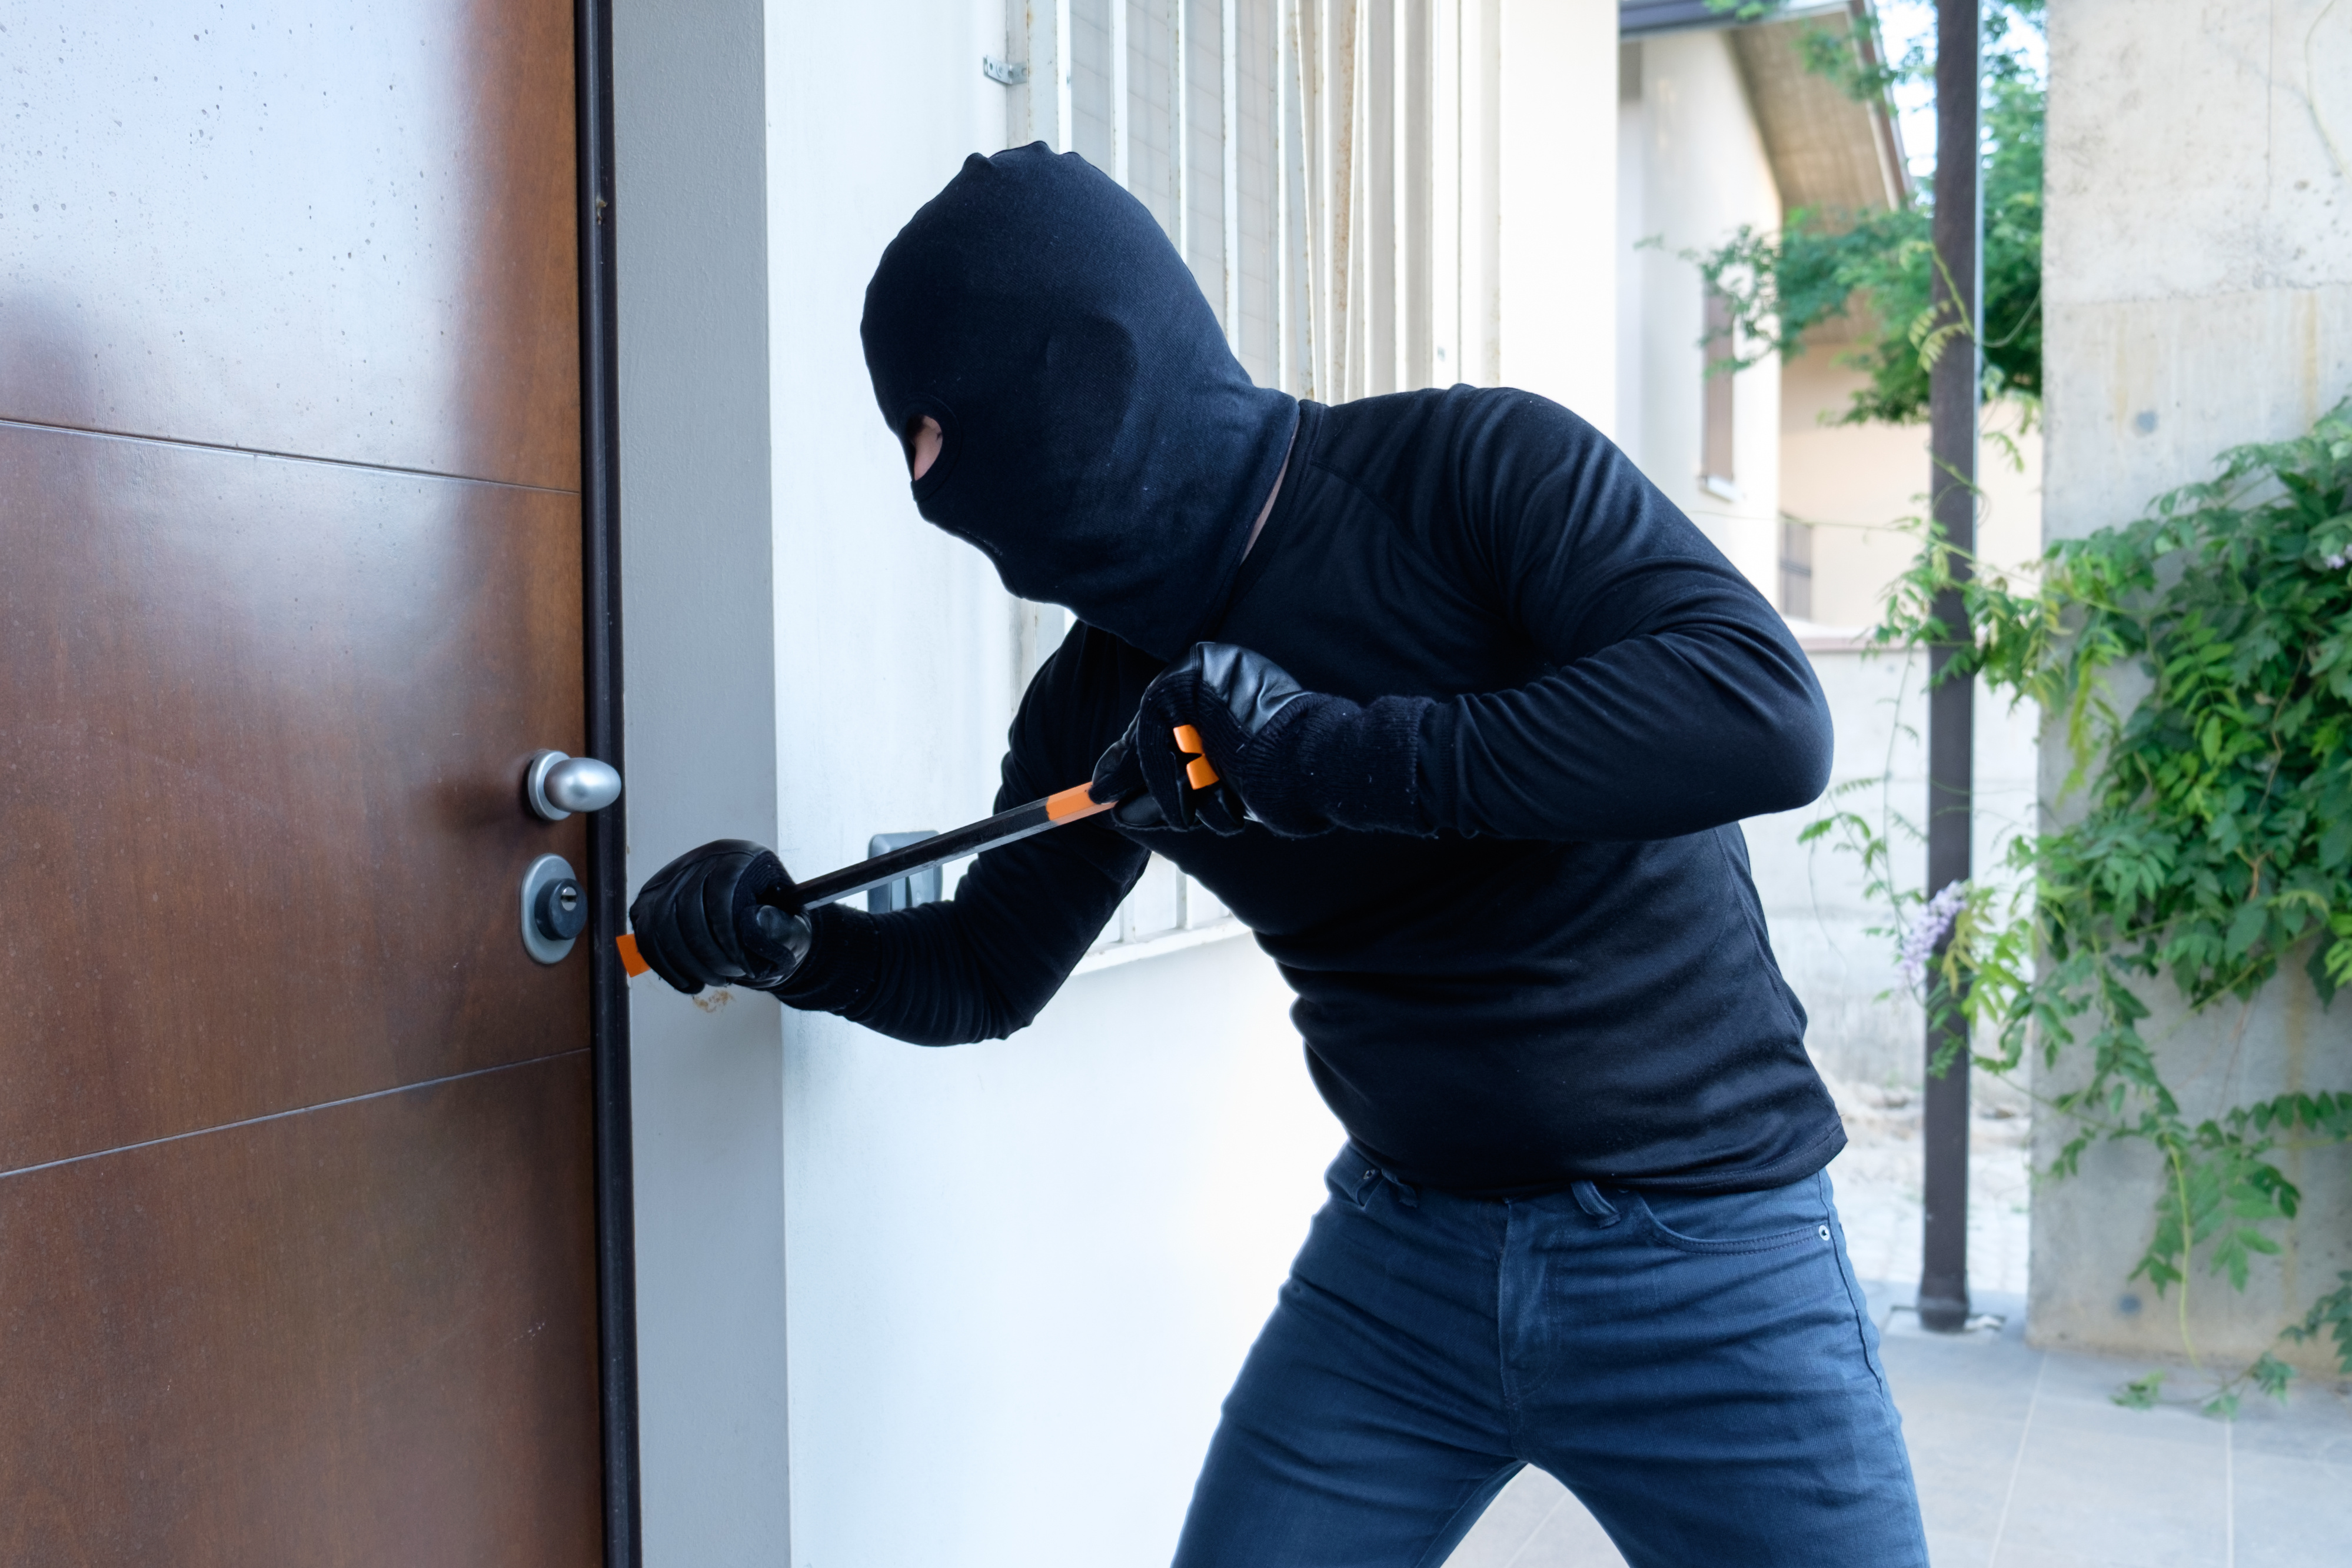 Cómo reforzar la seguridad de las puertas de la casa?